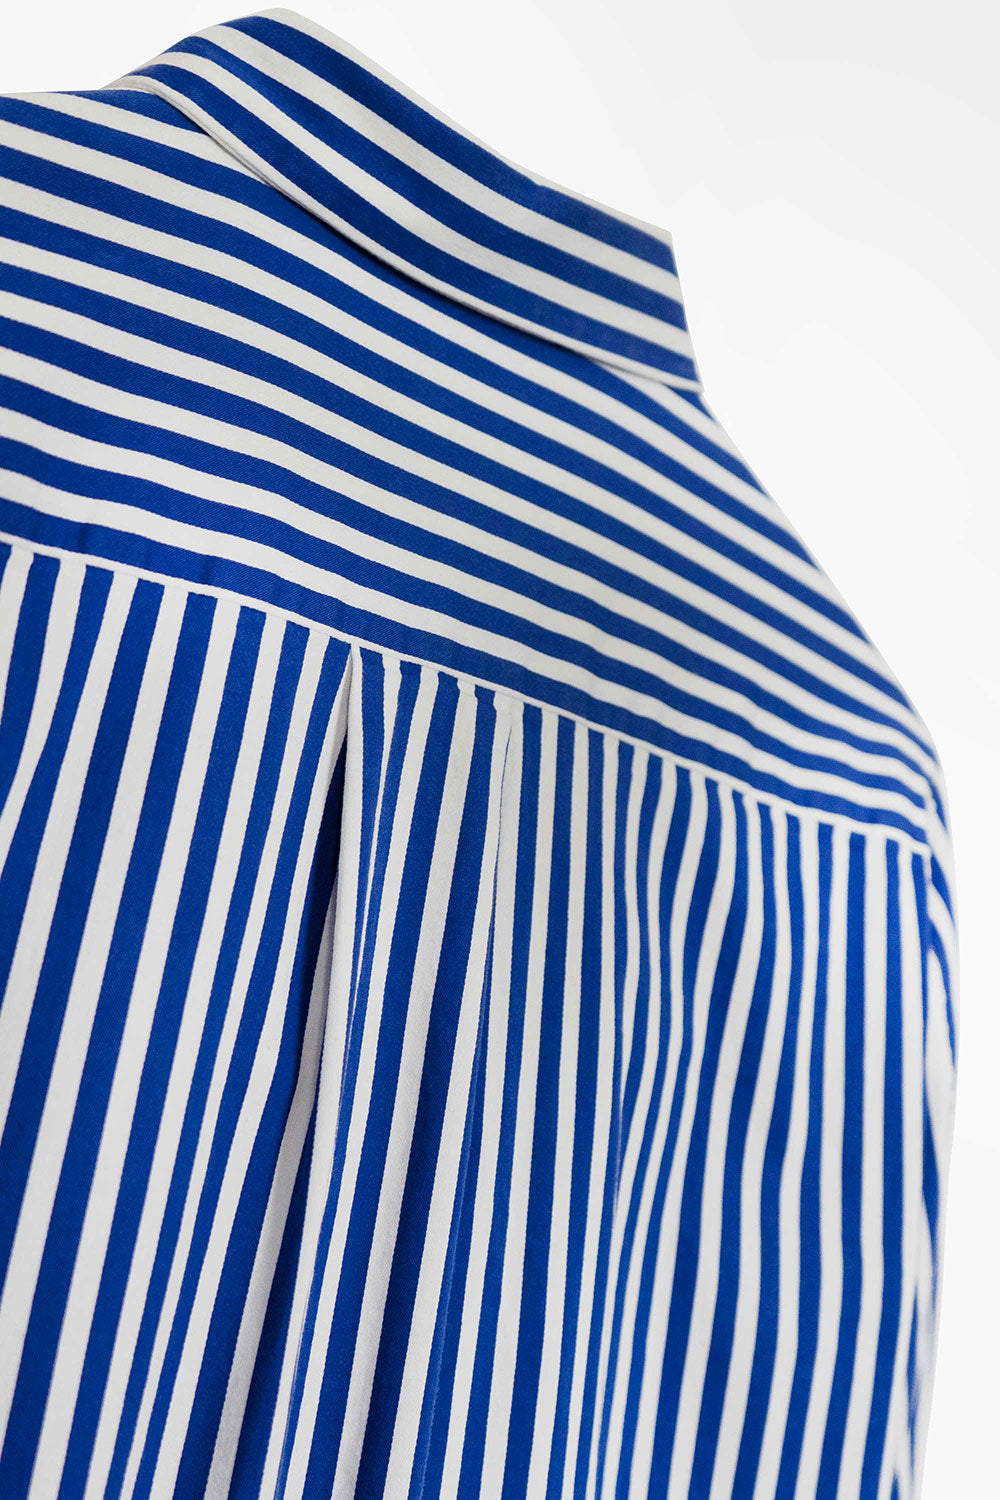 Malene Birger Pre-Owned Stripe Long Sleeve Shirt